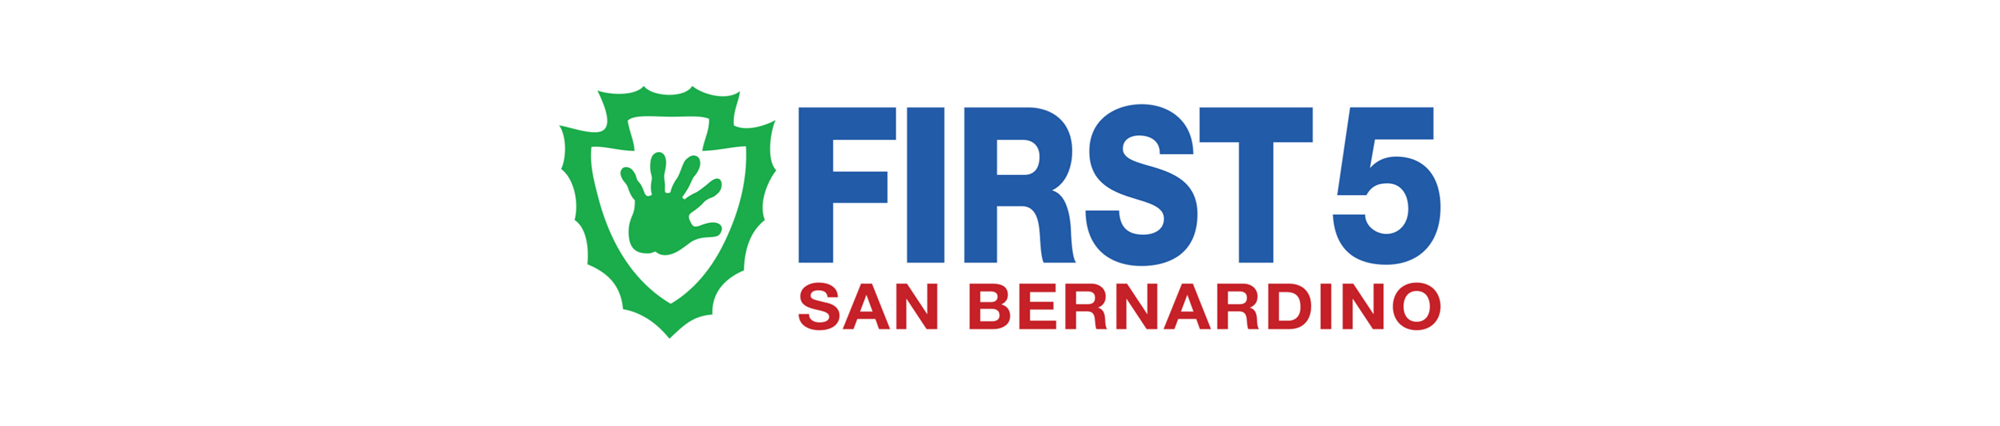 First Five San Bernardino